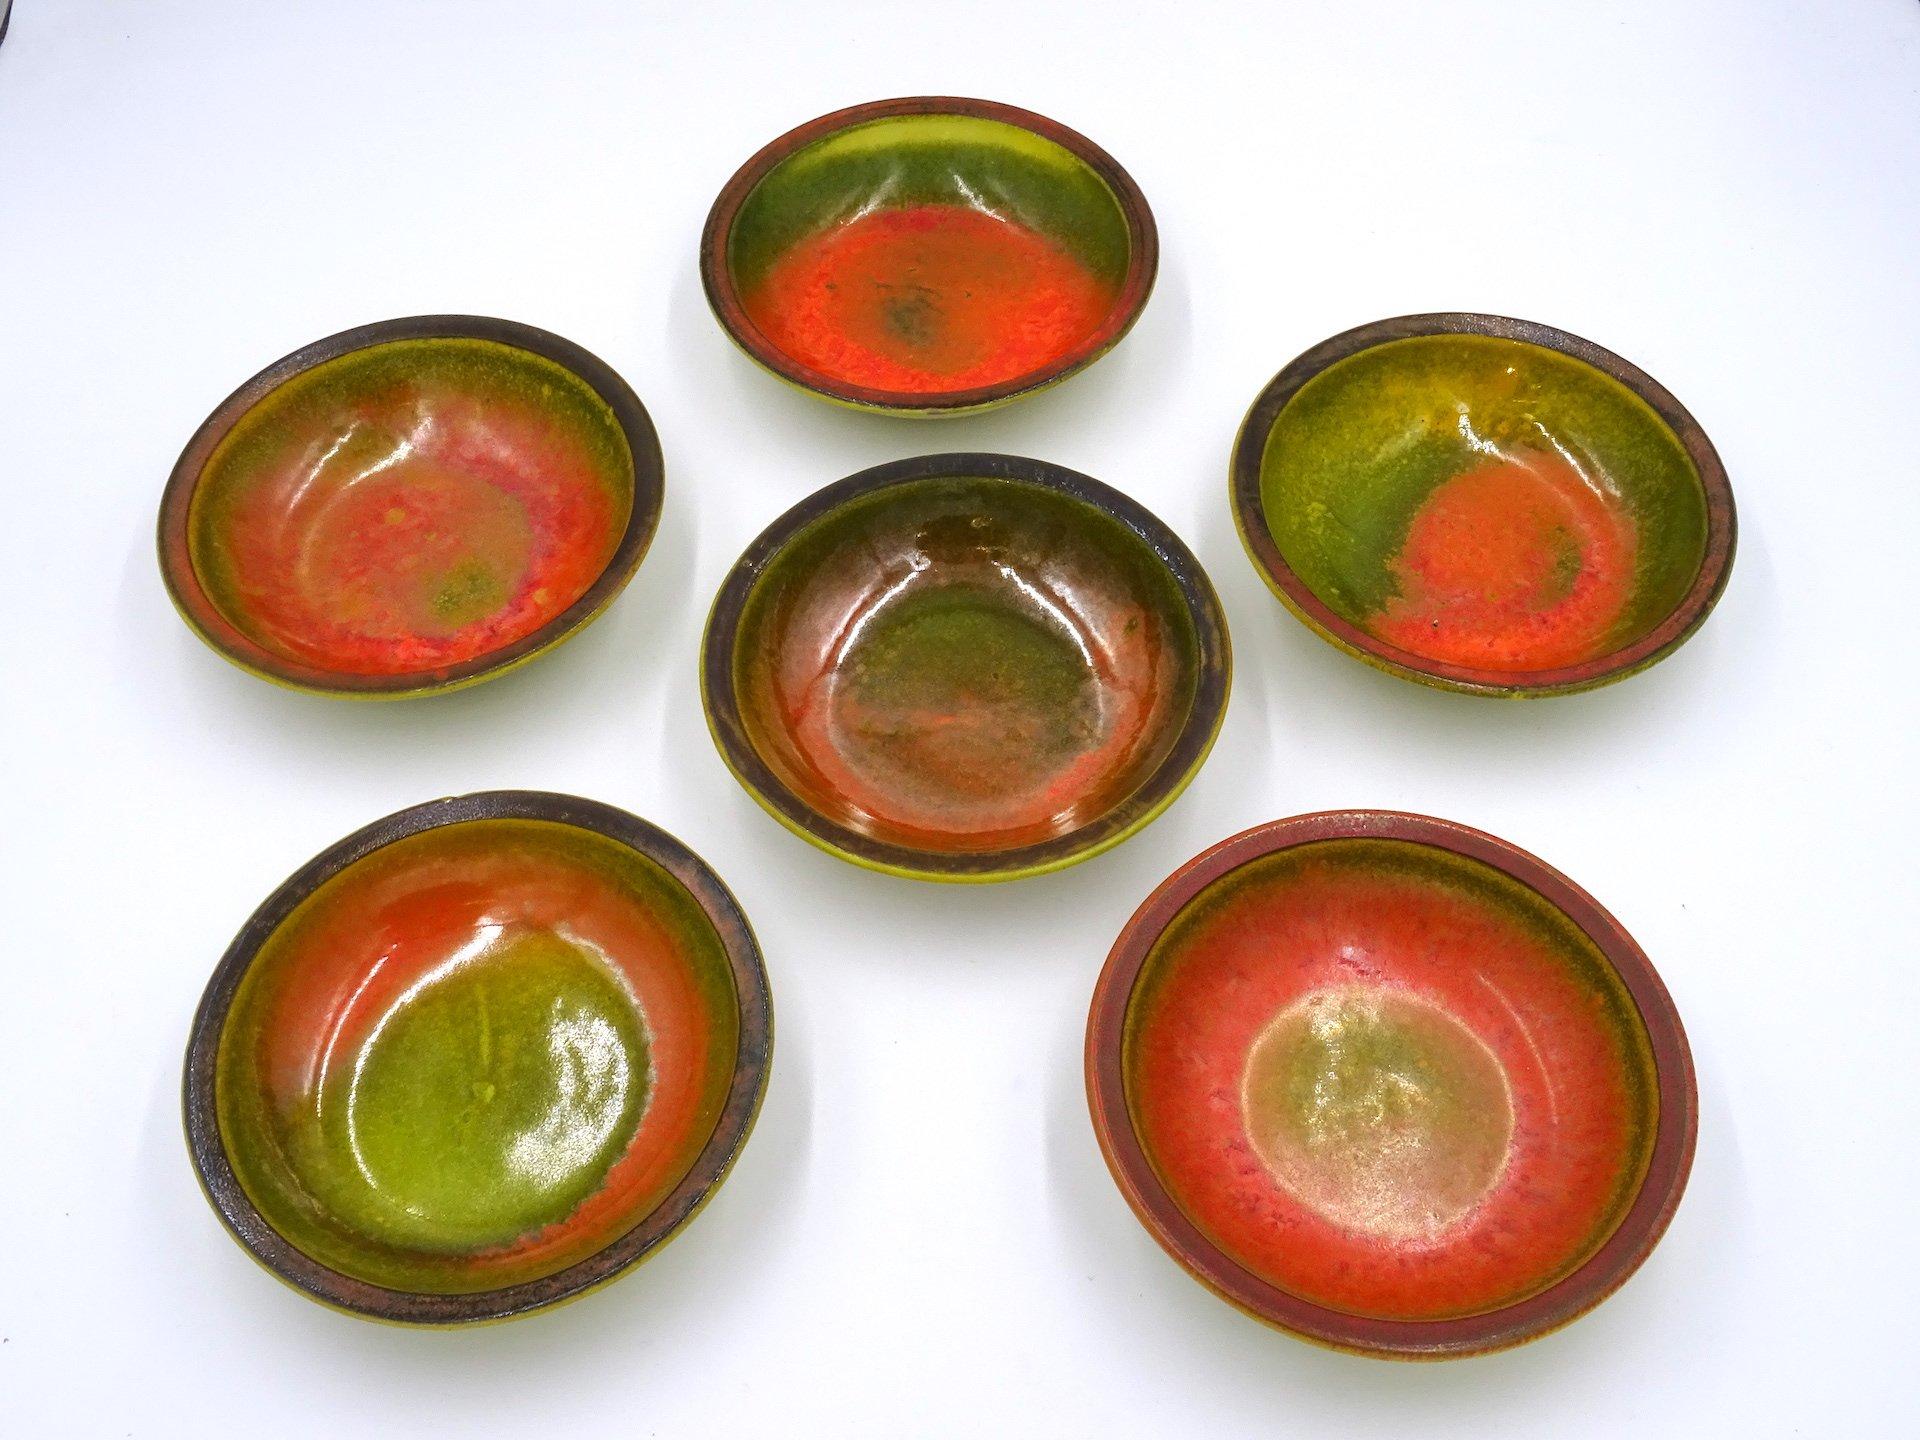 Ensemble composé de sept bols en céramique émaillée polychrome datant des années 70 de l'artiste italien Alessio TASCA :

- six petits bols caractérisés par des couleurs chaudes dont l'orange, le rouge, le vert, le brun, le magenta, chaque pièce